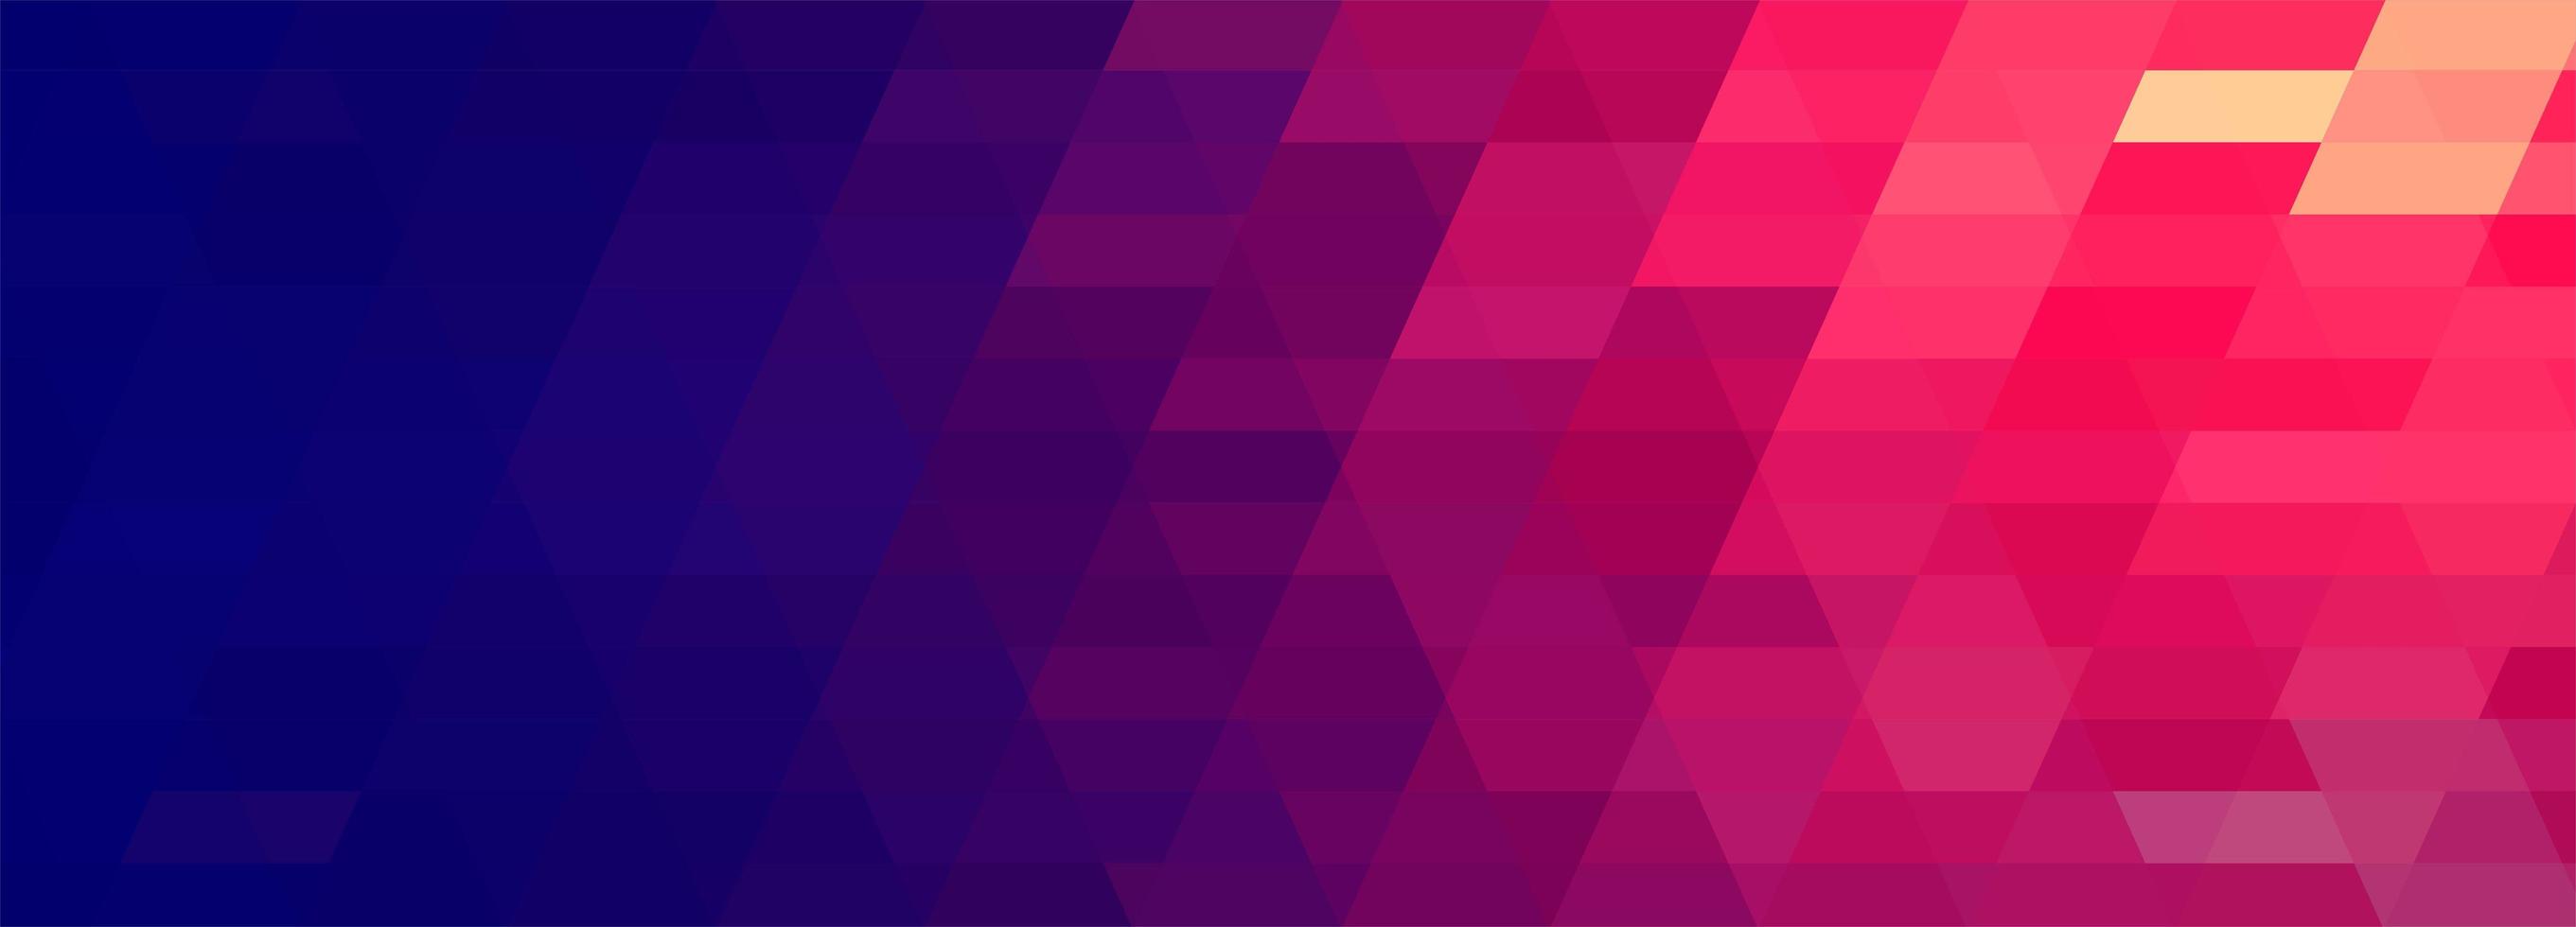 abstracte kleurrijke geometrische banner vector